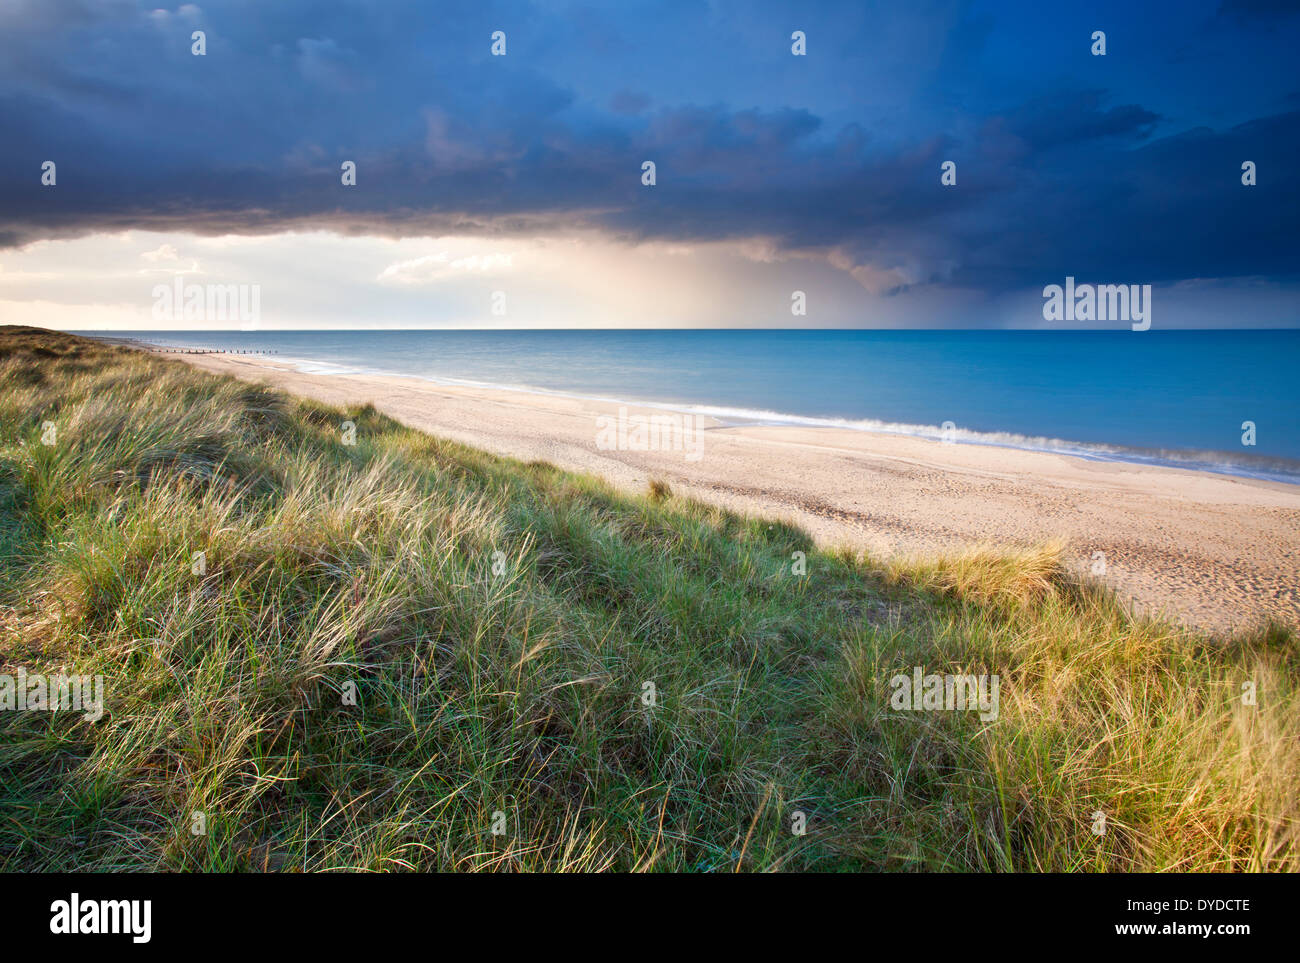 Le dune di sabbia a Horsey e una spettacolare tempesta di estate fuori in mare. Foto Stock